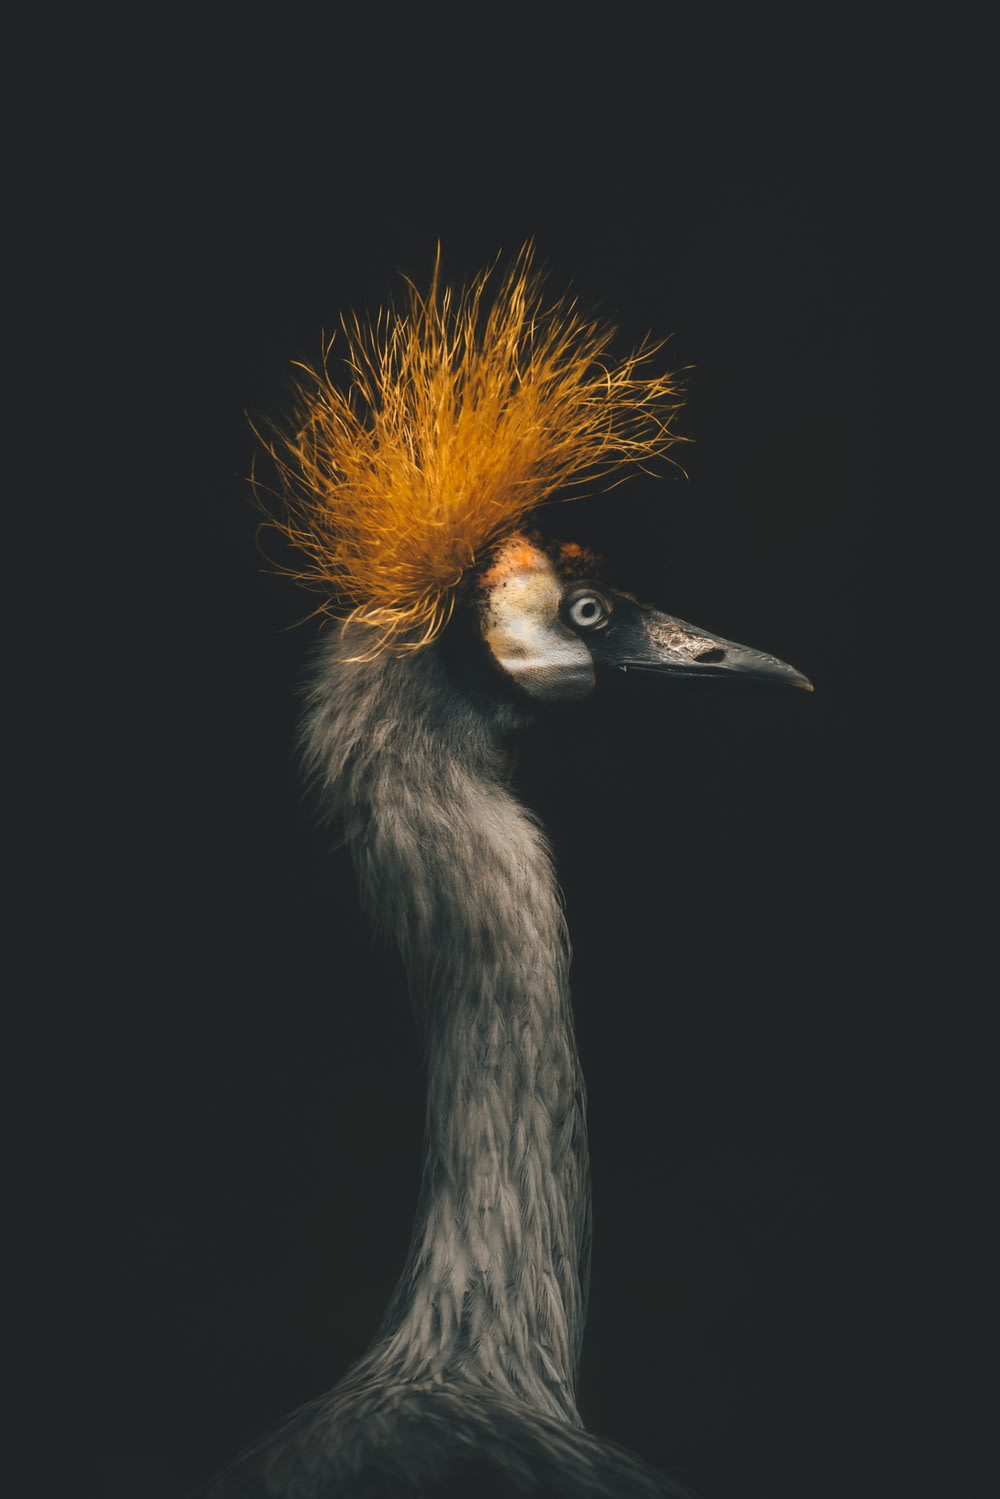 Un oiseau avec un mohawk jaune sur la tête